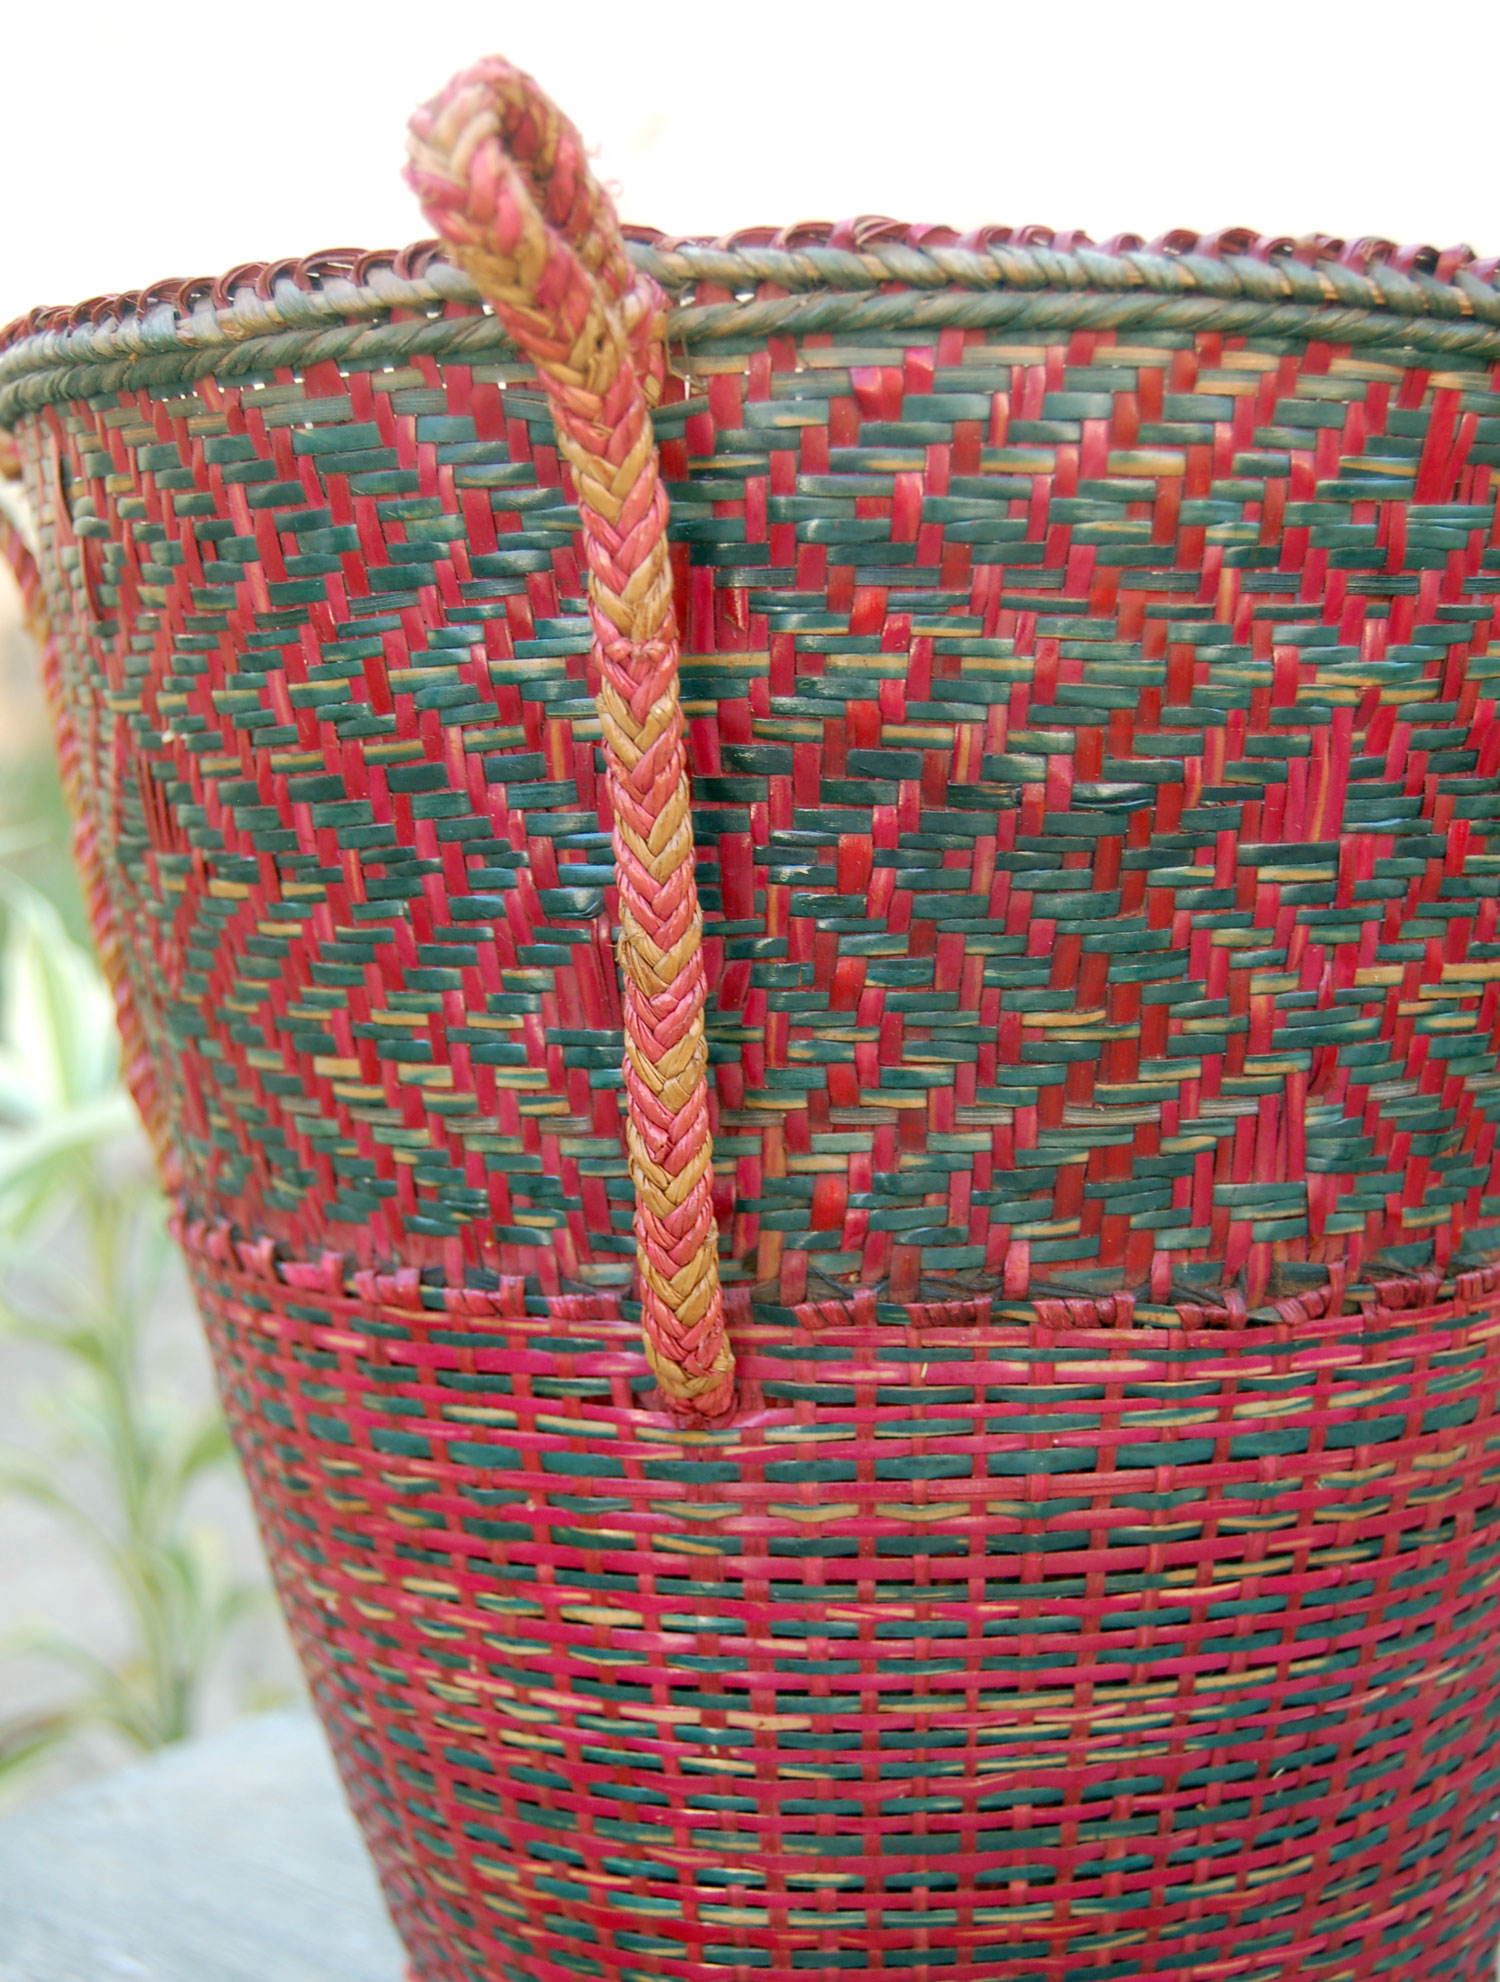 Deep Planter Baskets (Tea Harvester Baskets) – Set of 2